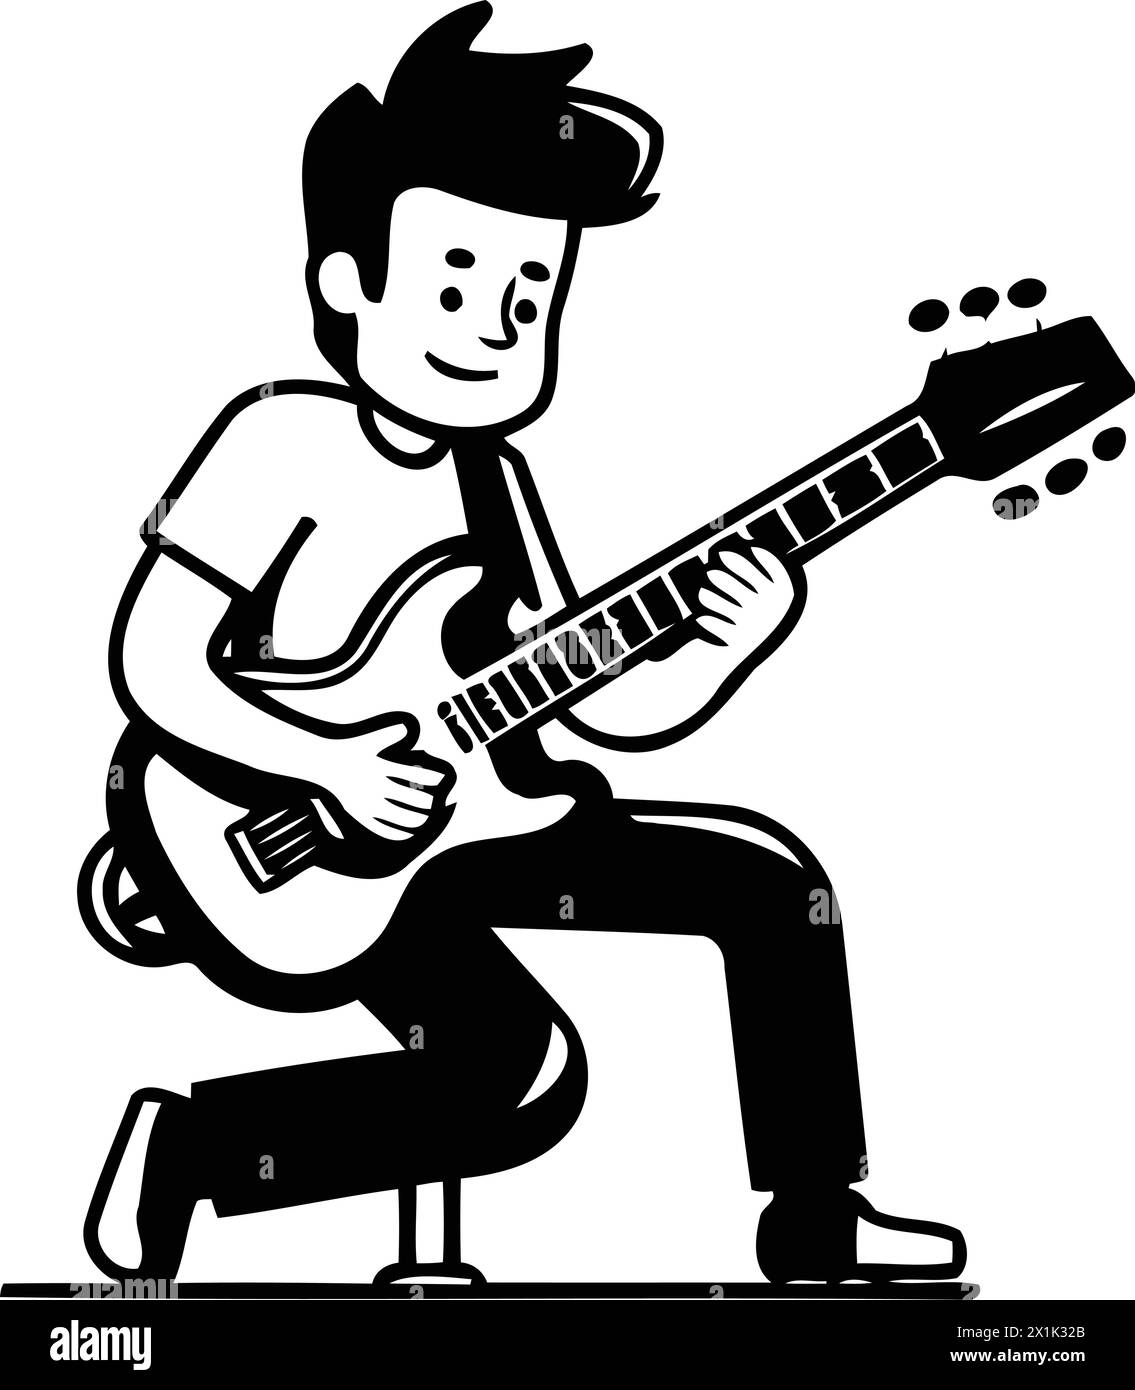 Illustrazione vettoriale dei cartoni animati del chitarrista. Design piatto dell'uomo che suona la chitarra. Illustrazione Vettoriale